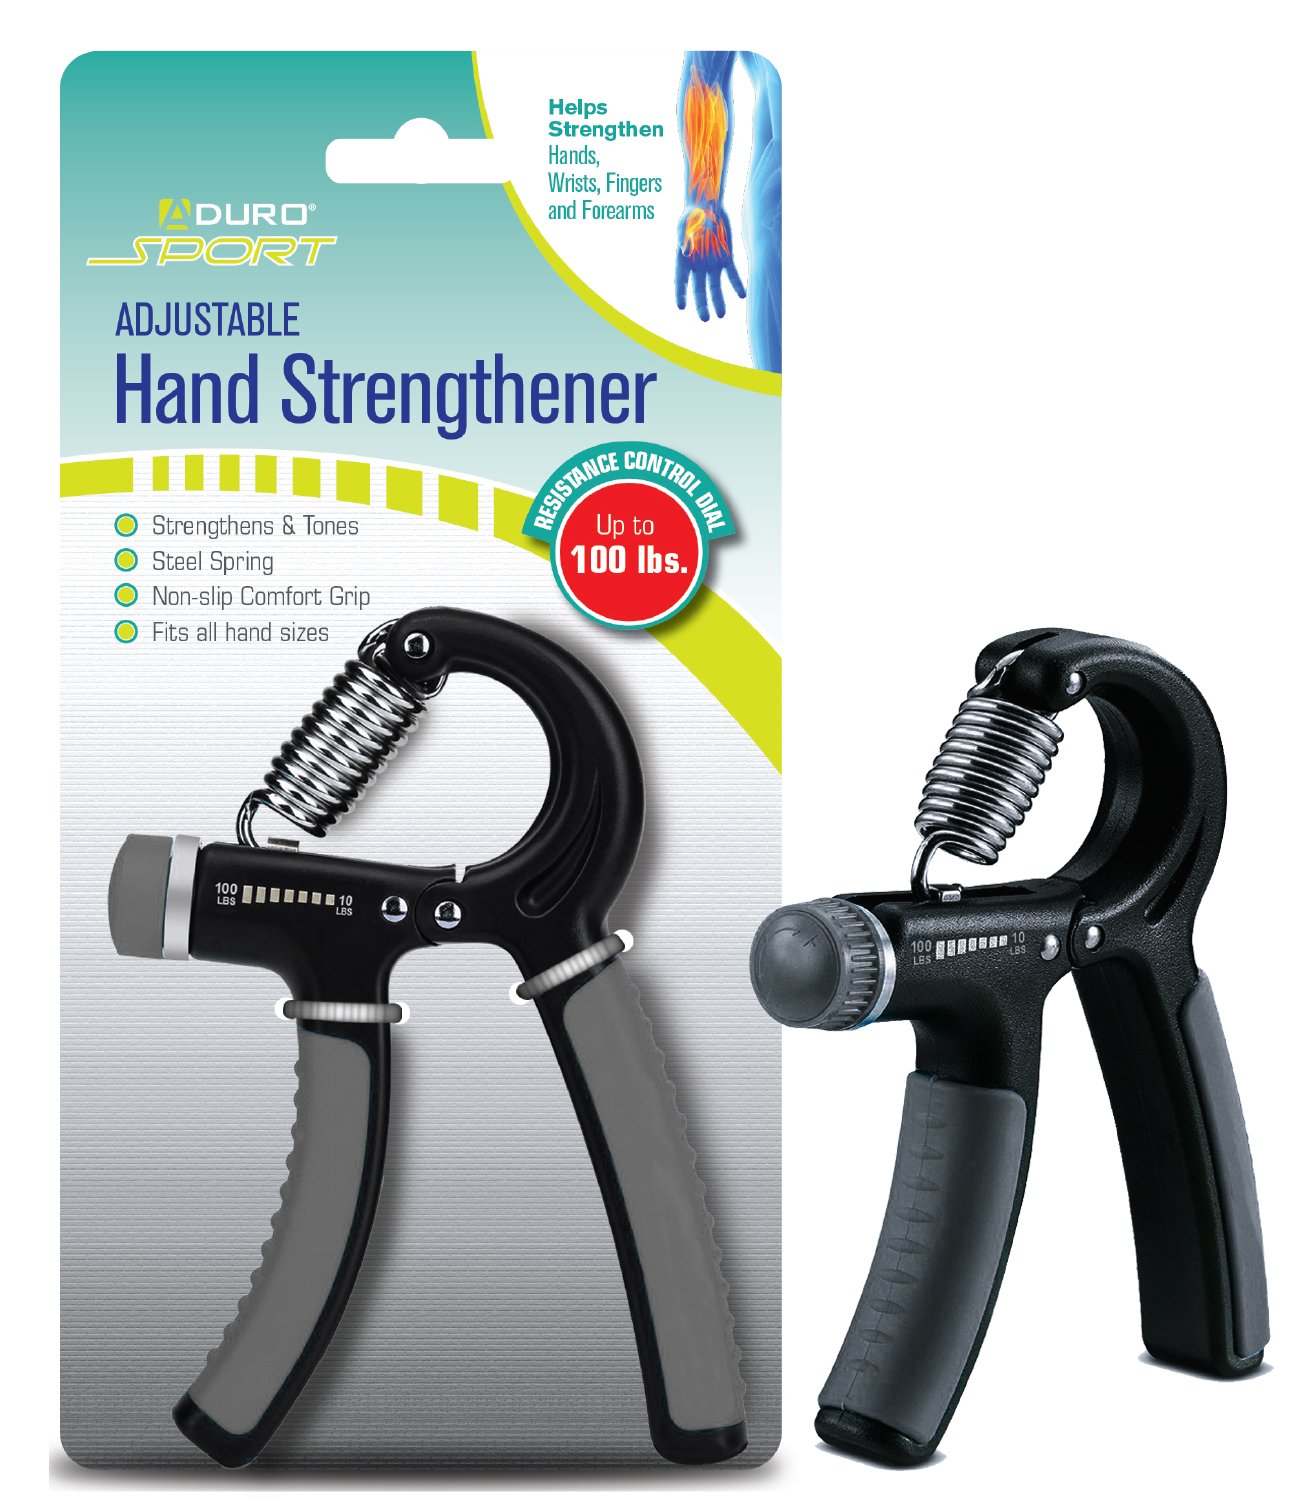 Hand Grip Strengthener, TSV Hand Squeezer Exerciser Adjustable